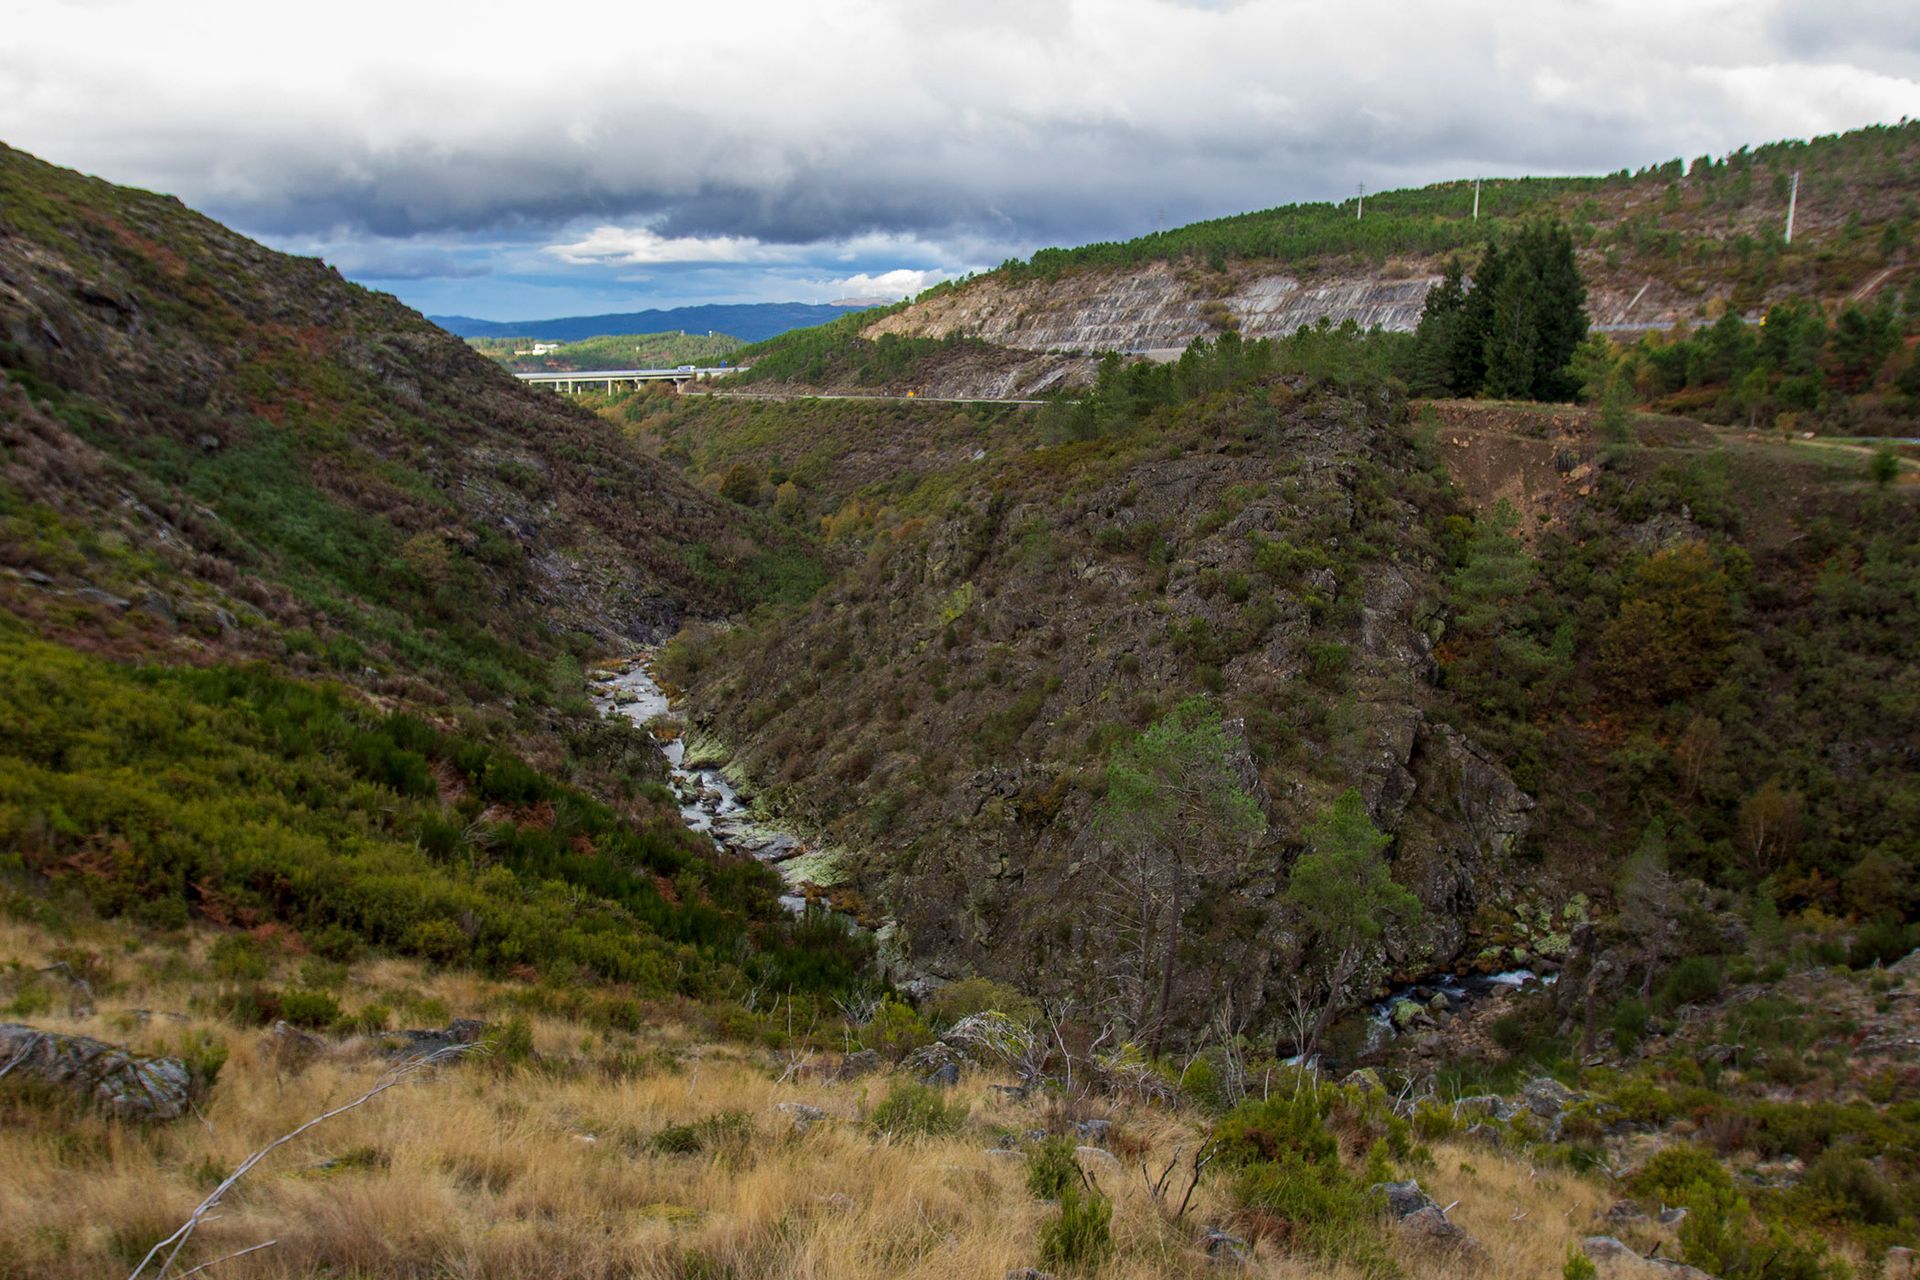 Imagem do Vale do Lourêdo em Ribeira de Pena com o rio Lourêdo a serpentear as encostas do vale